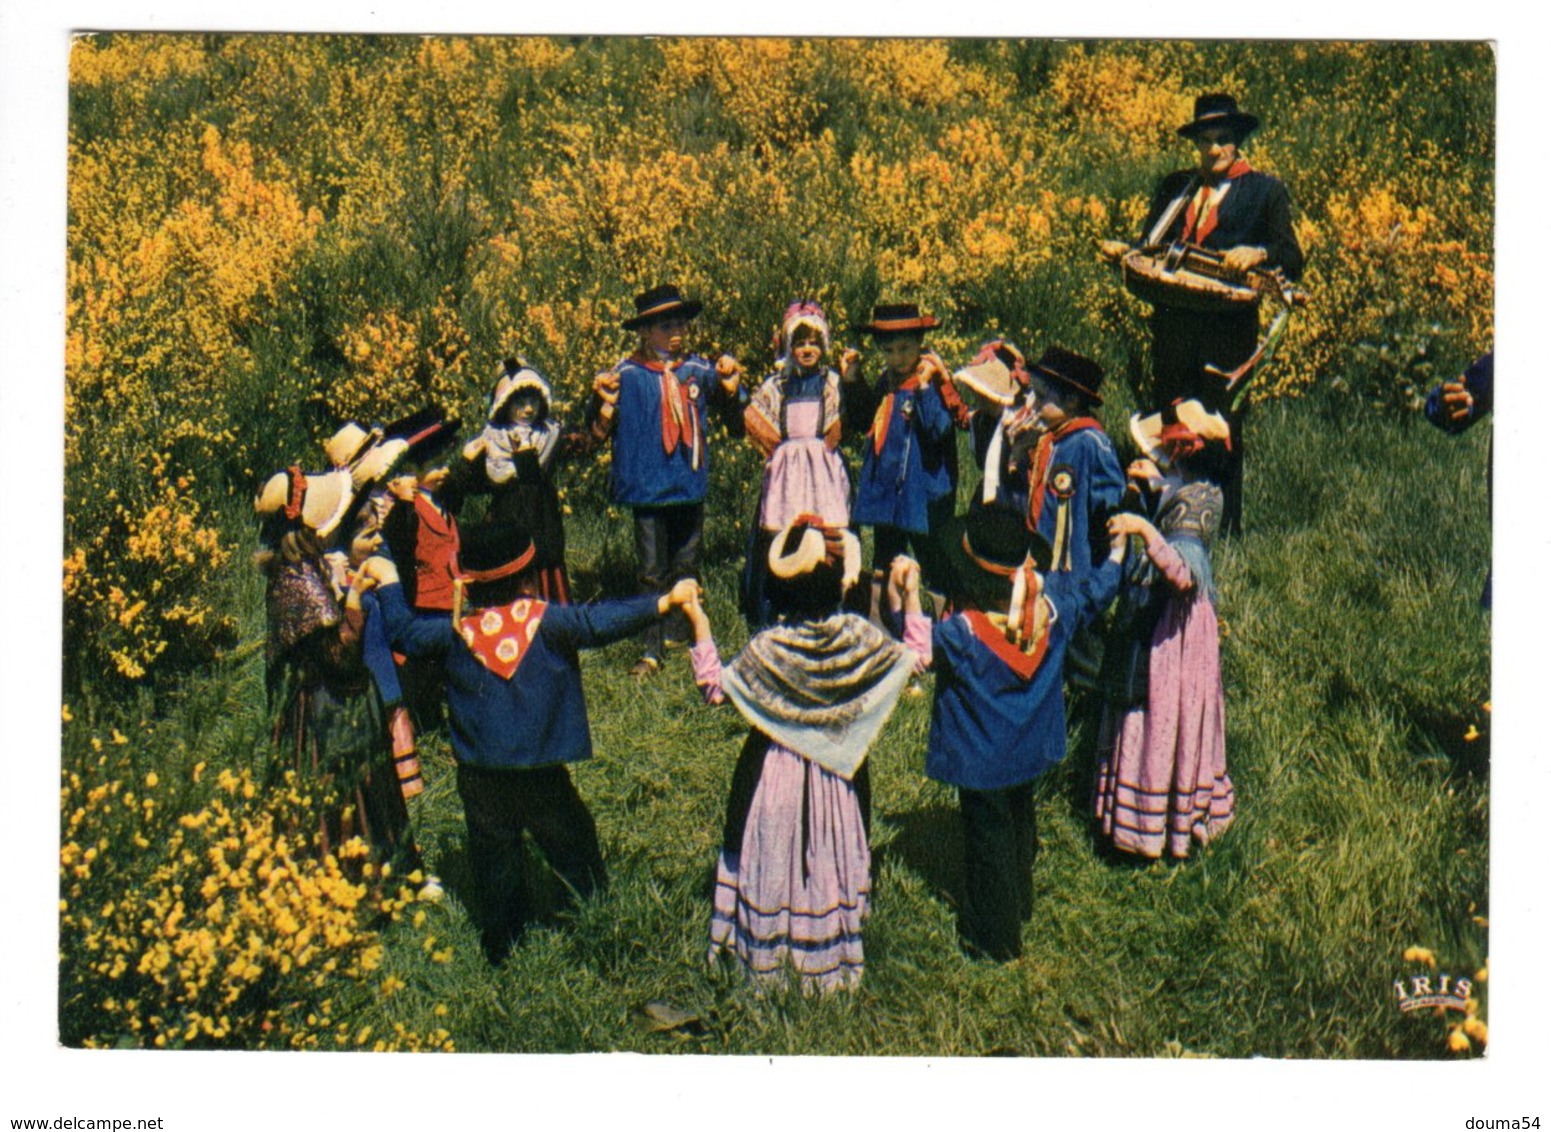 19 - Groupe Folklorique D'USSEL - Les Compagnons De La Joie Au Village (Vielle) - Musique